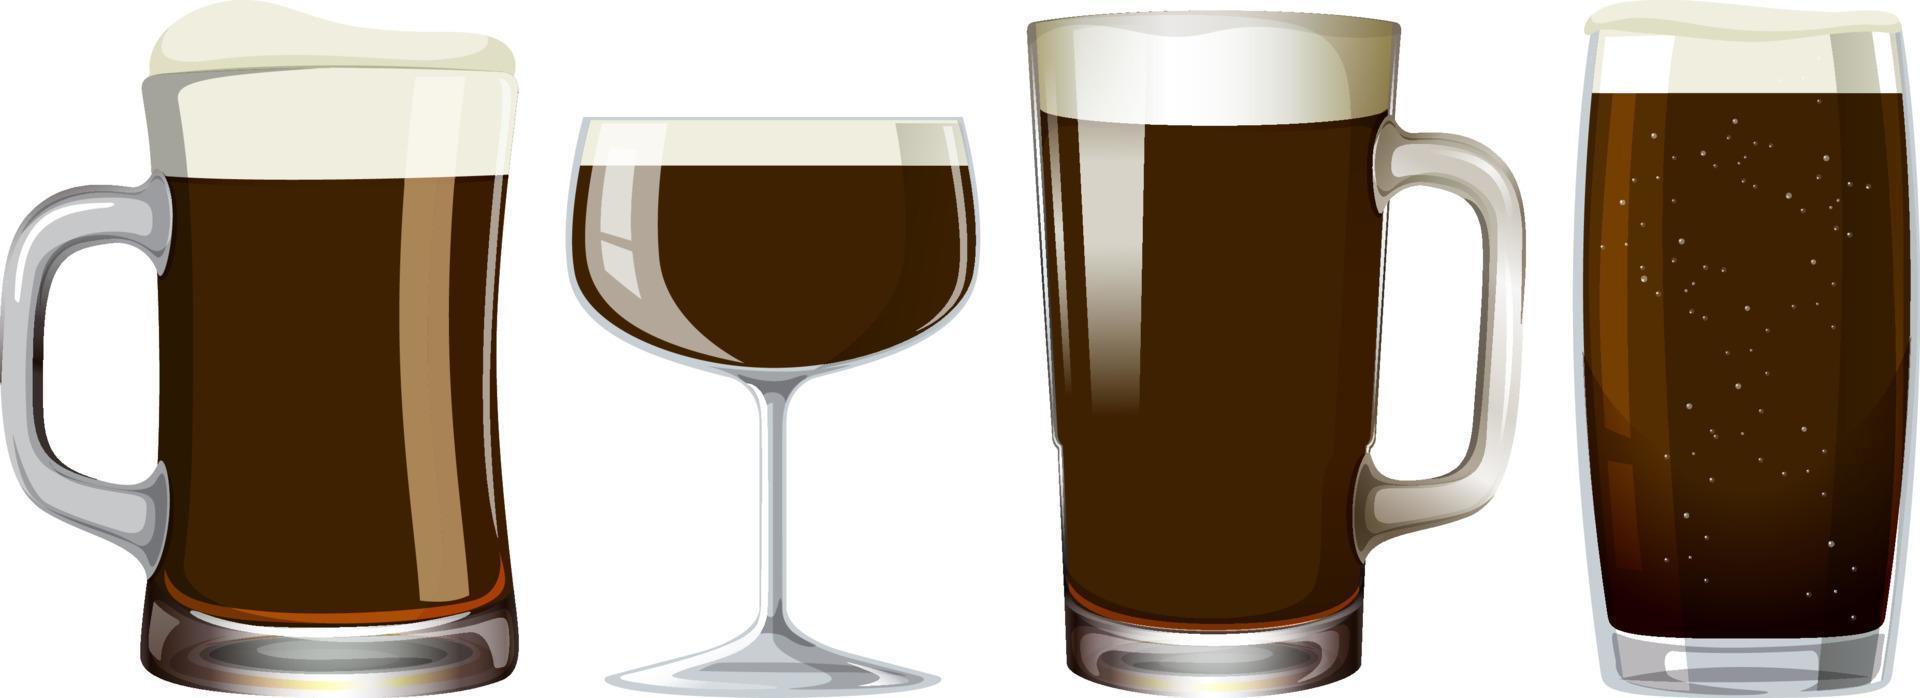 Alkoholgetränk in verschiedenen Gläsern vektor